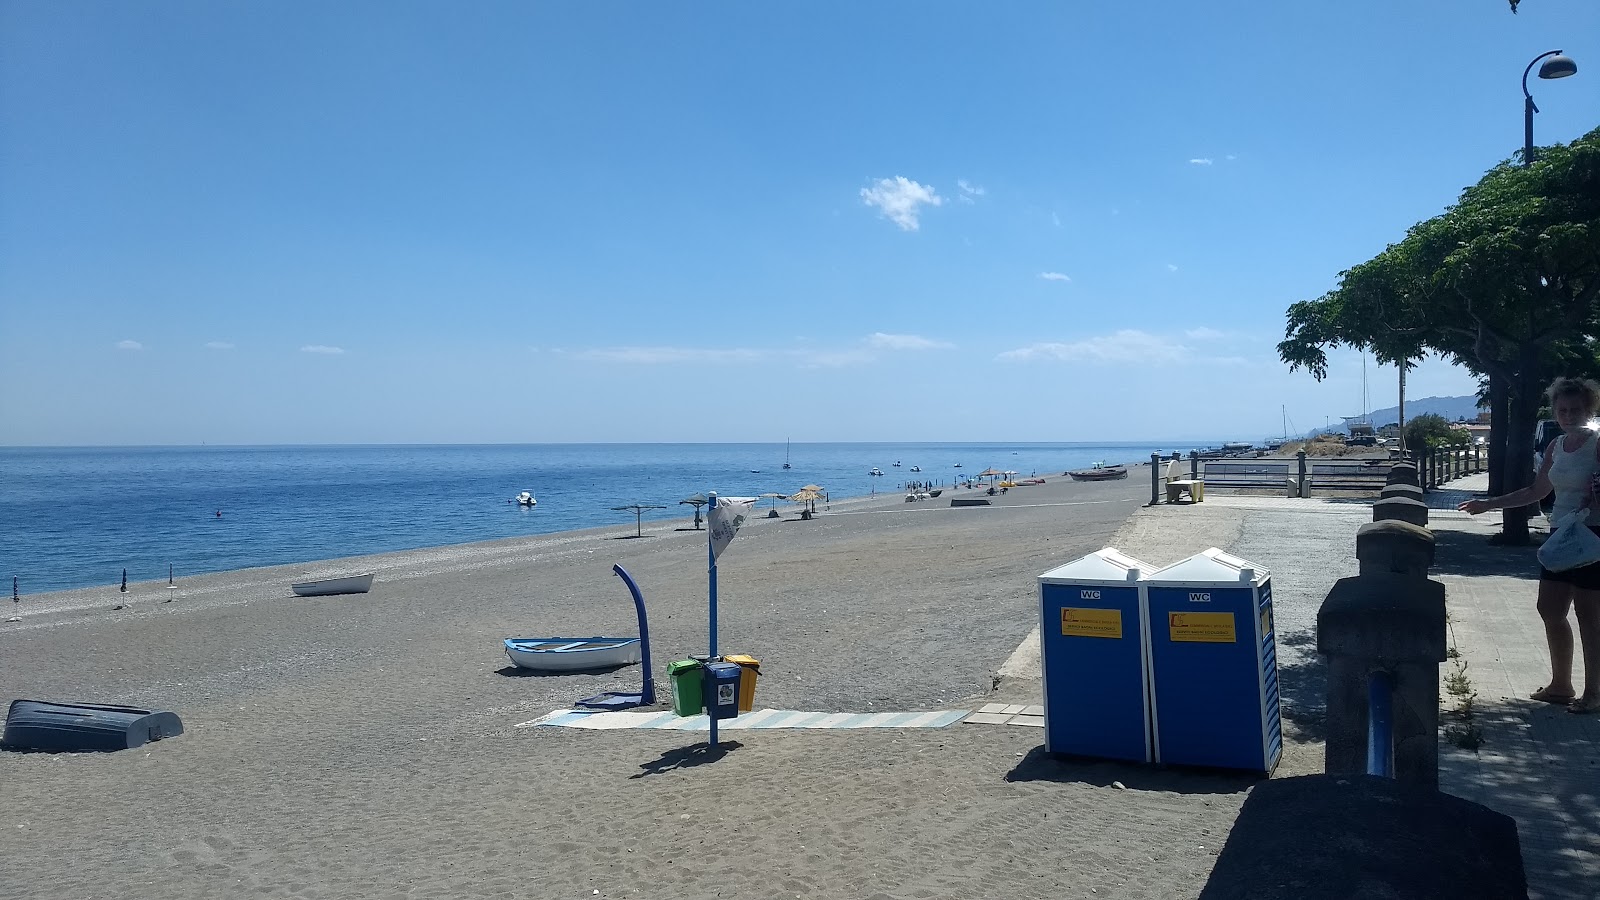 Zdjęcie Ali Terme beach - popularne miejsce wśród znawców relaksu